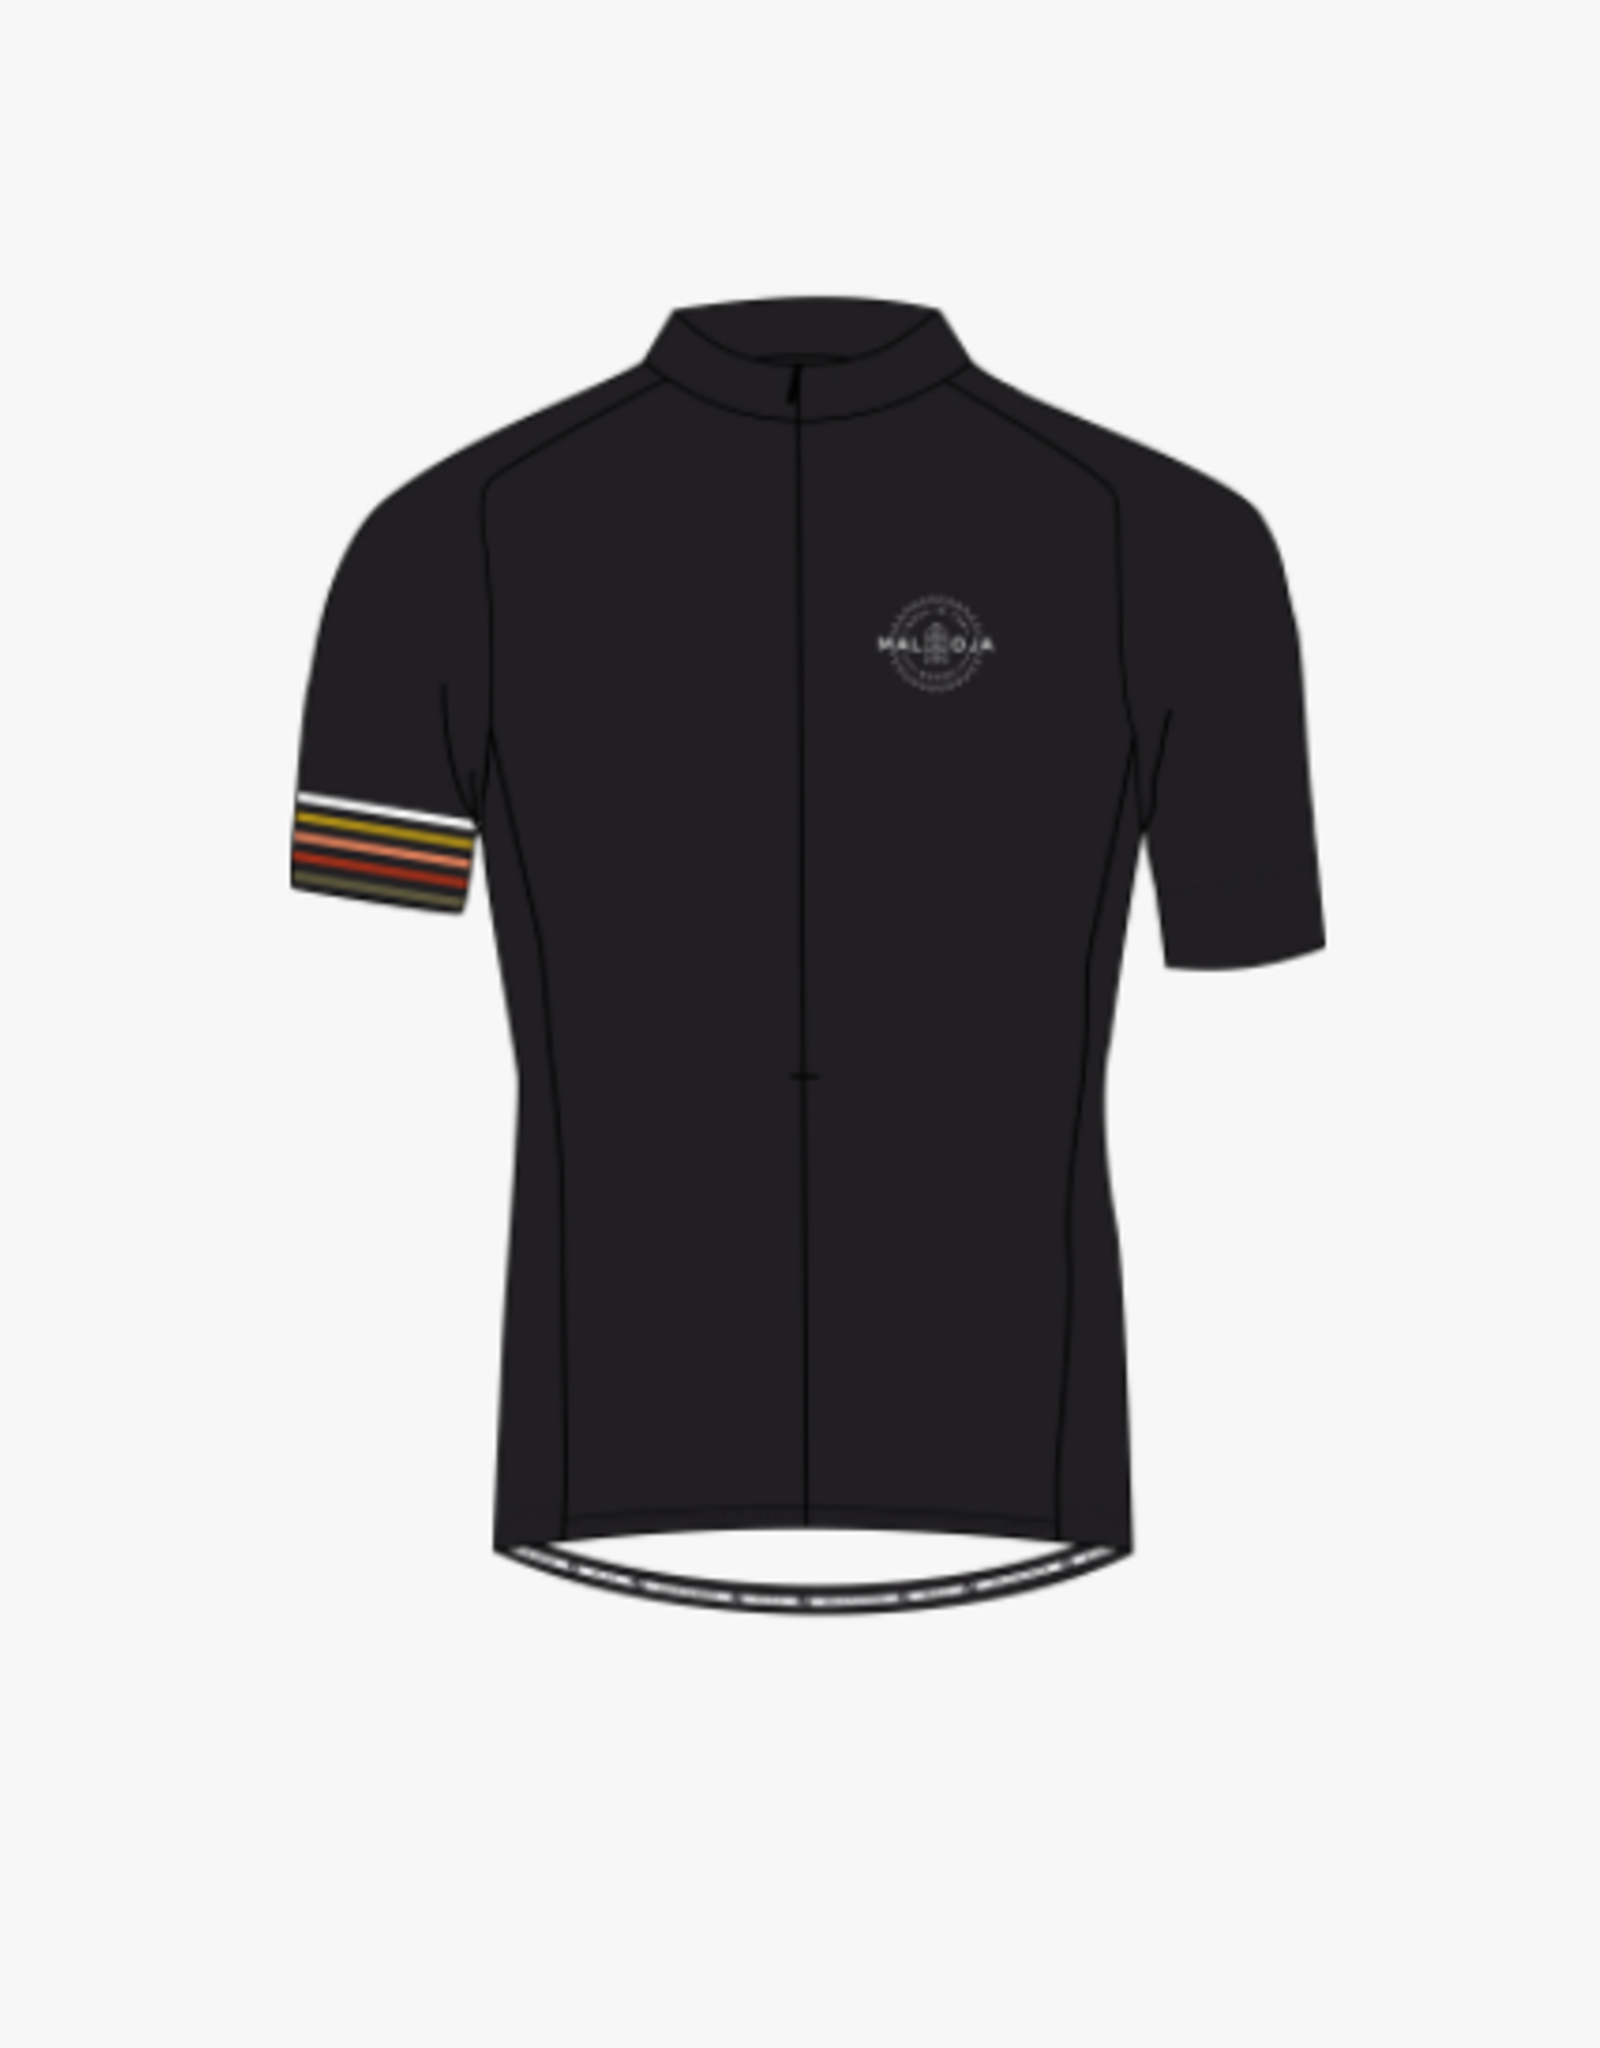 maloja Kratzdistel fiets shirt (31241)